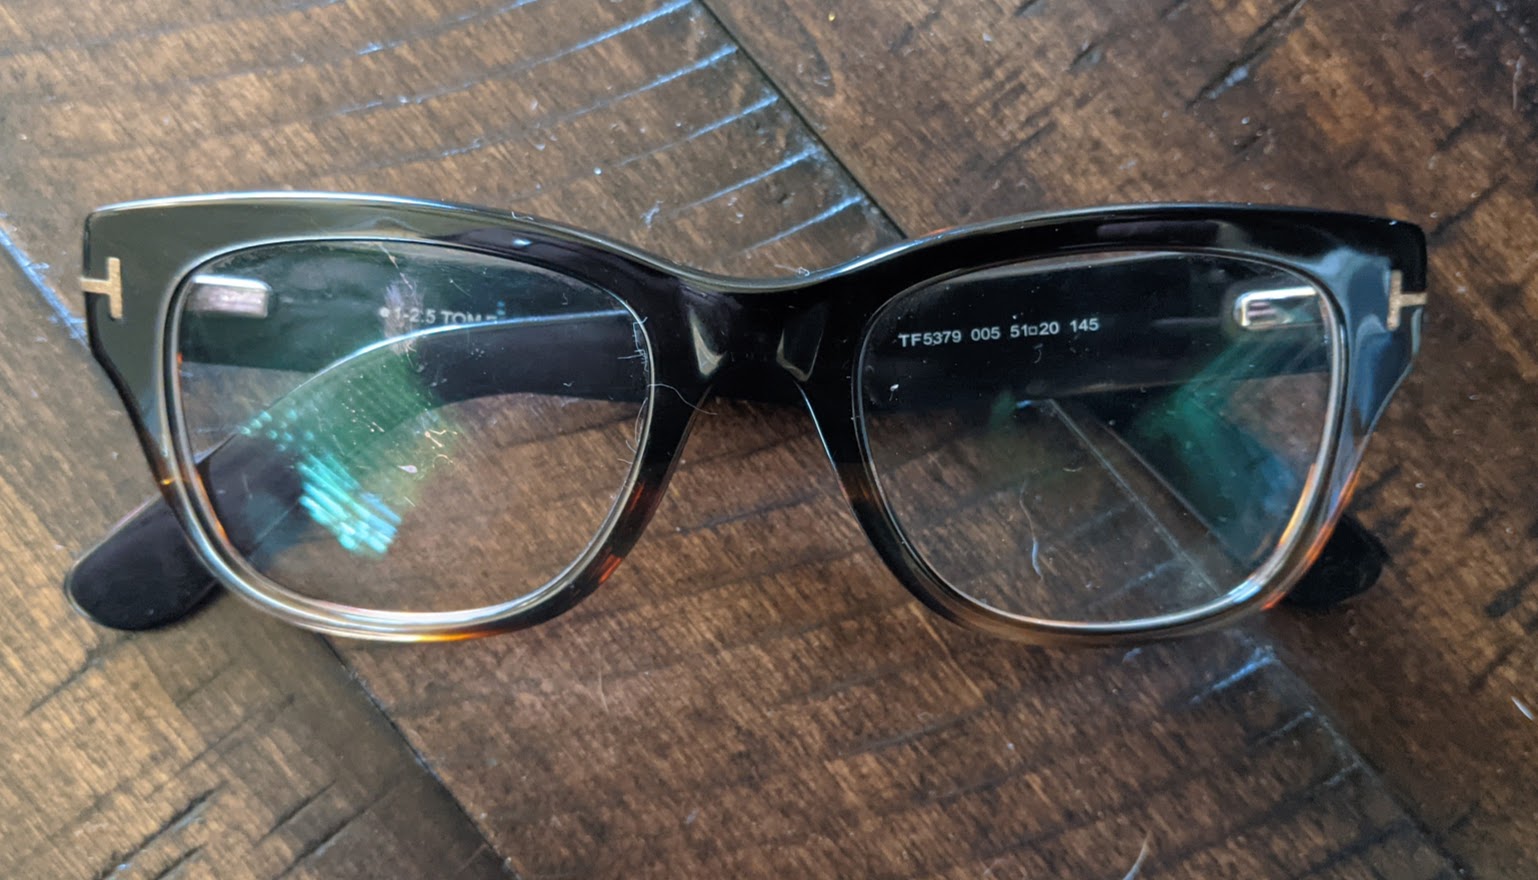 Tom-Ford-Reading-Glasses-TF5379.jpg